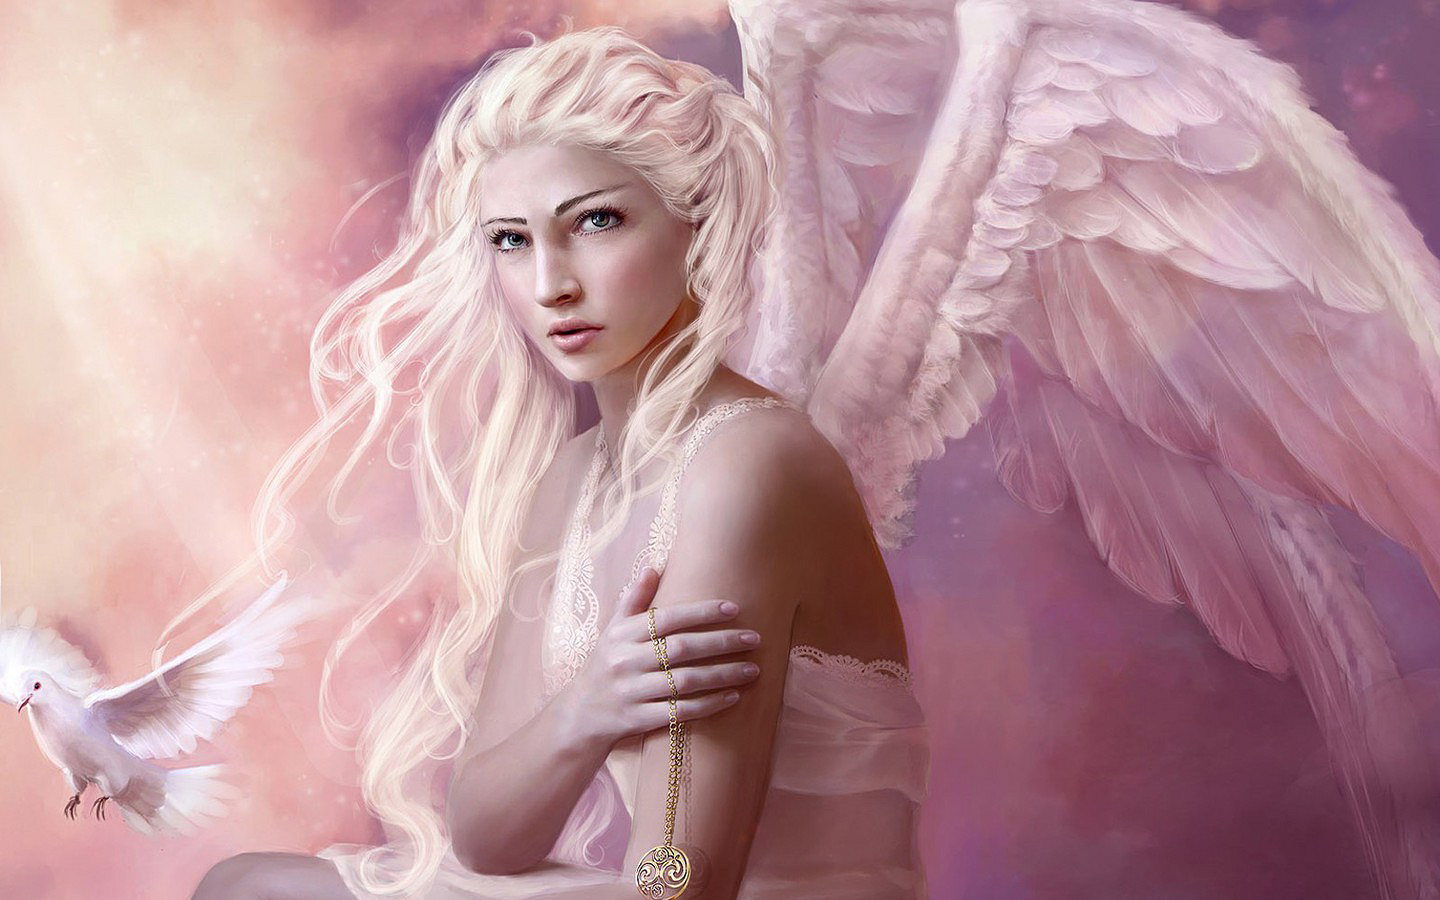 天使の壁紙,天使,cgアートワーク,超自然的な生き物,美しさ,ピンク